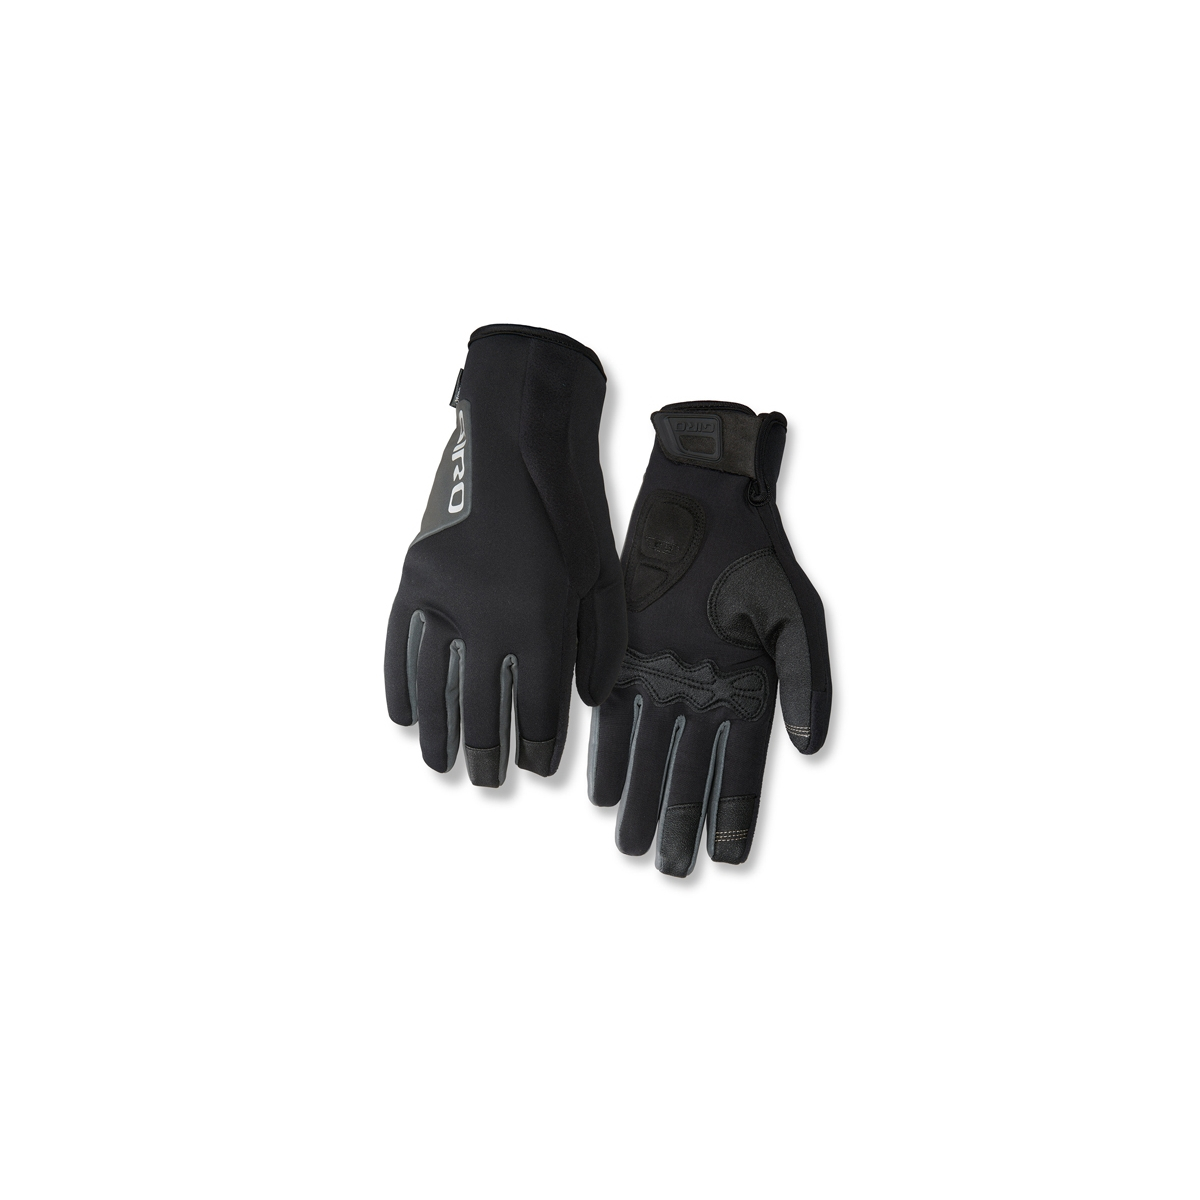 Rękawiczki zimowe GIRO AMBIENT 2.0 długi palec bla